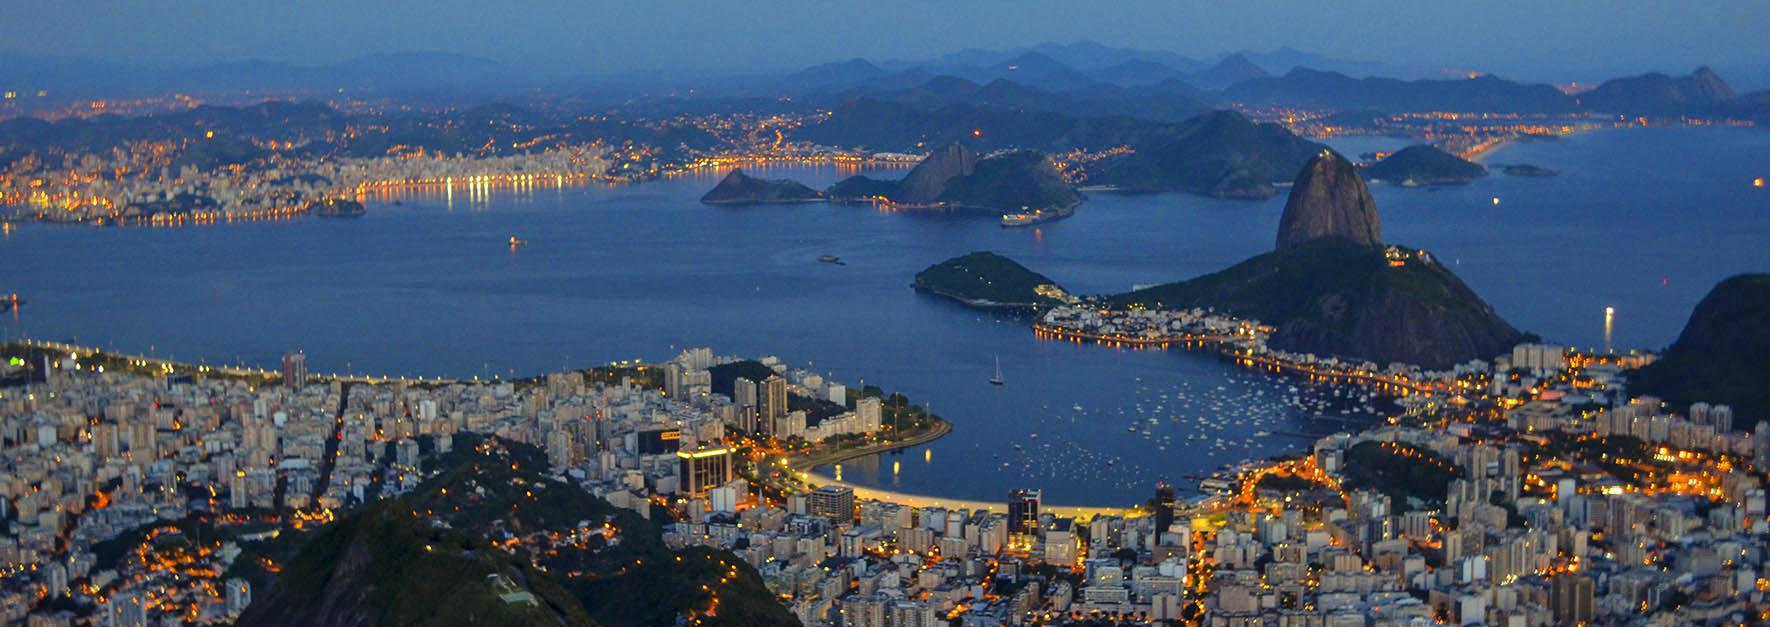 5 Lugares para Curtir o Rio de Janeiro de Forma Econômica